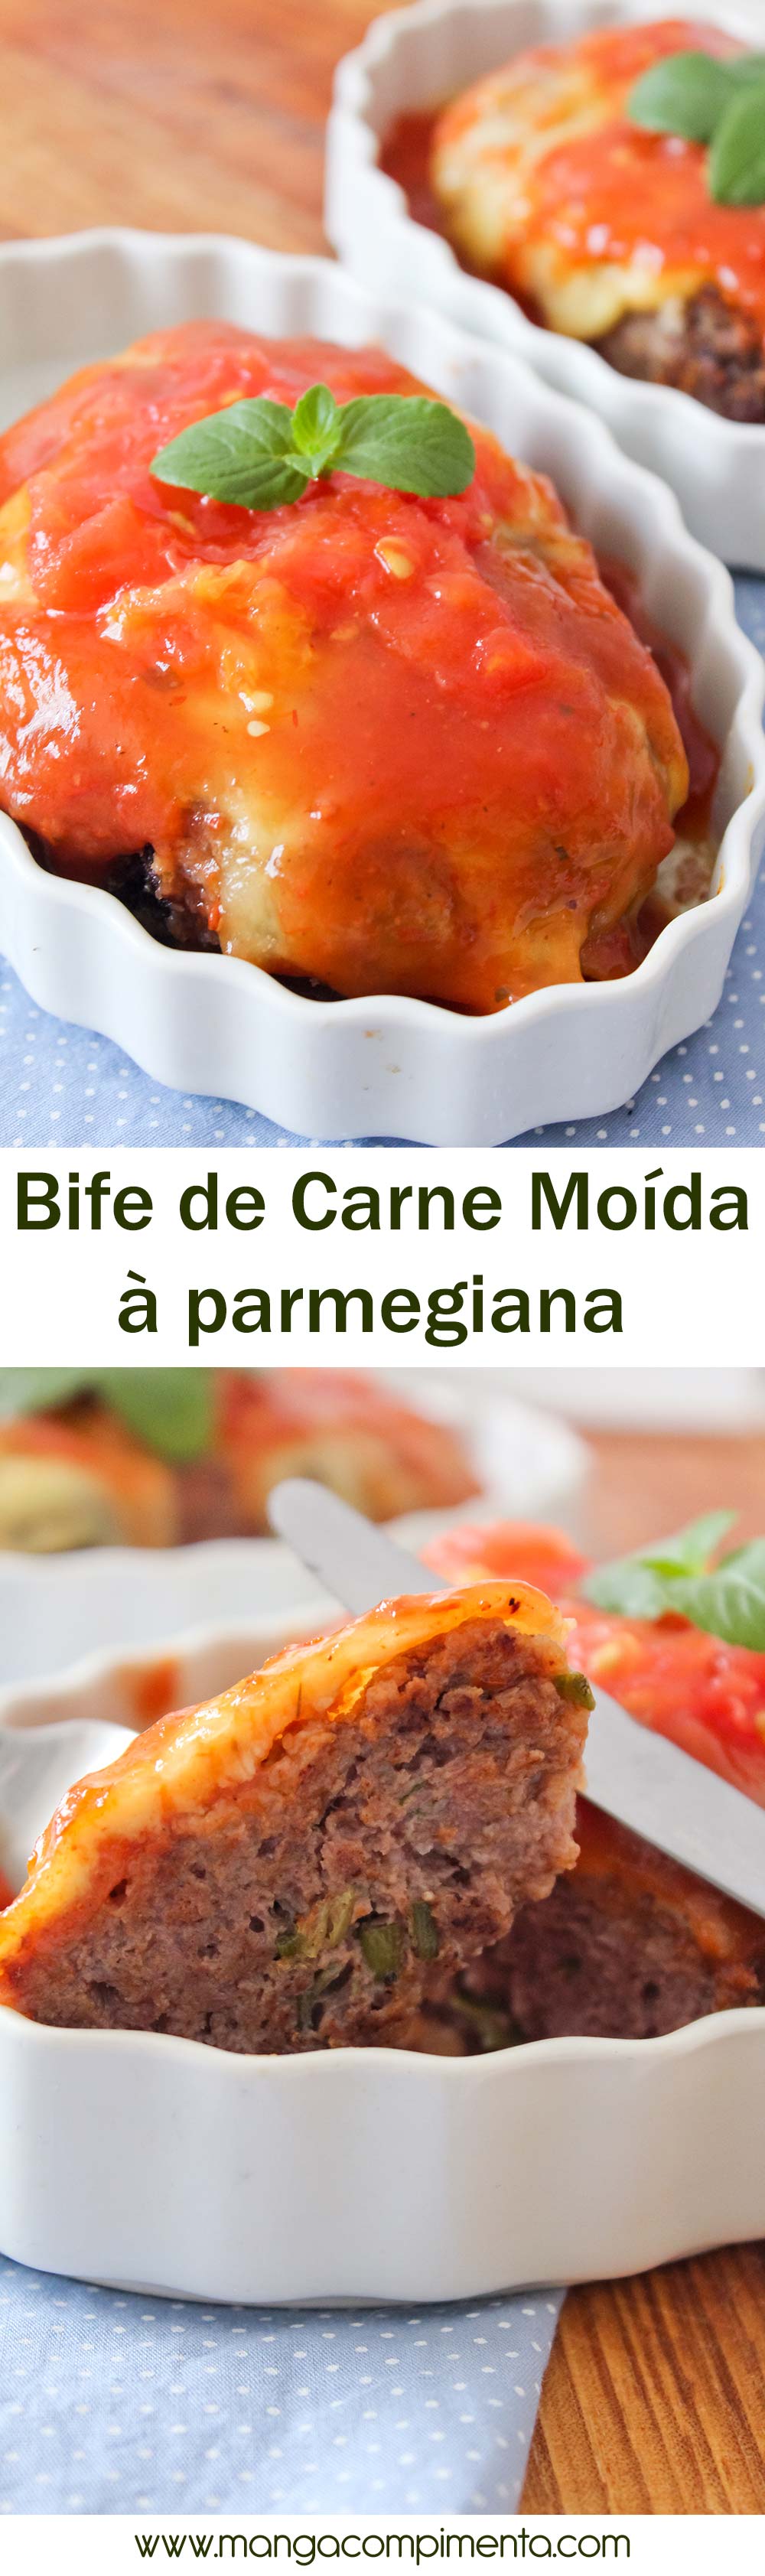 Bife de Carne Moída à Parmegiana | Para o almoço ou jantar da Semana!